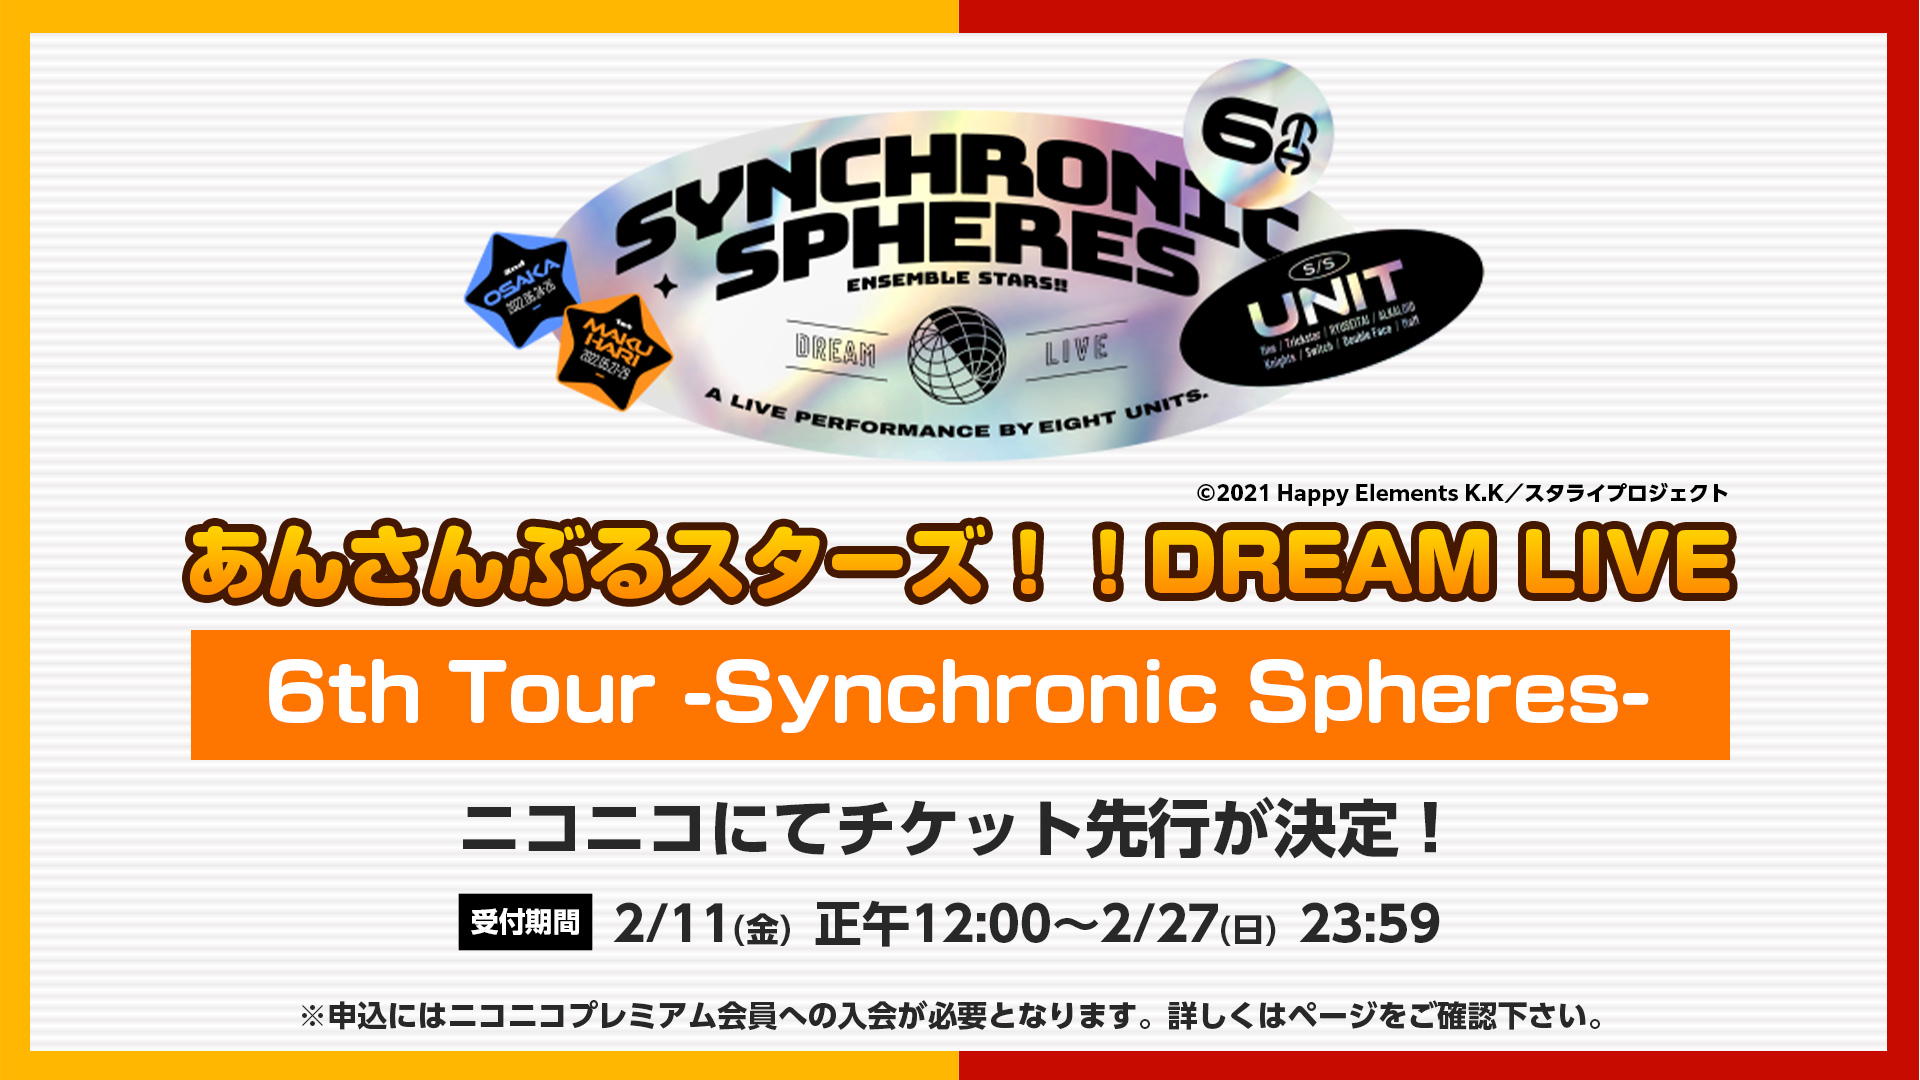 あんさんぶるスターズ！！DREAM LIVE - 6th Tour Synchronic Spheres - チケット先行申込 | ニコニコ